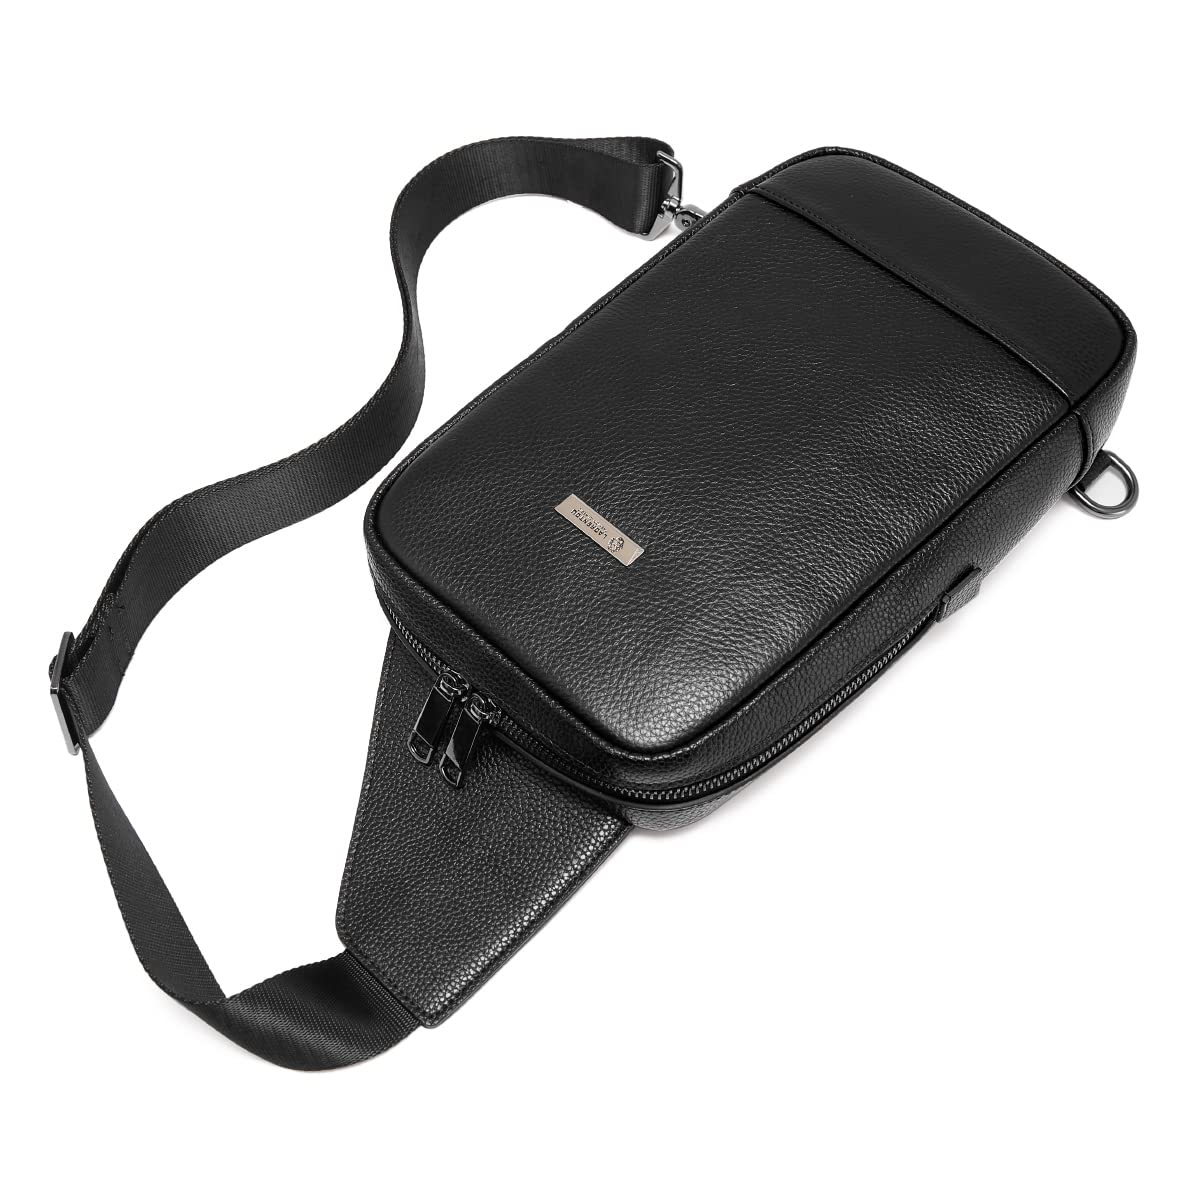 LAORENTOU Crossbody Sling Backpack Packs Sling Bag Travel Hiking Daypack Chest Bag for Men